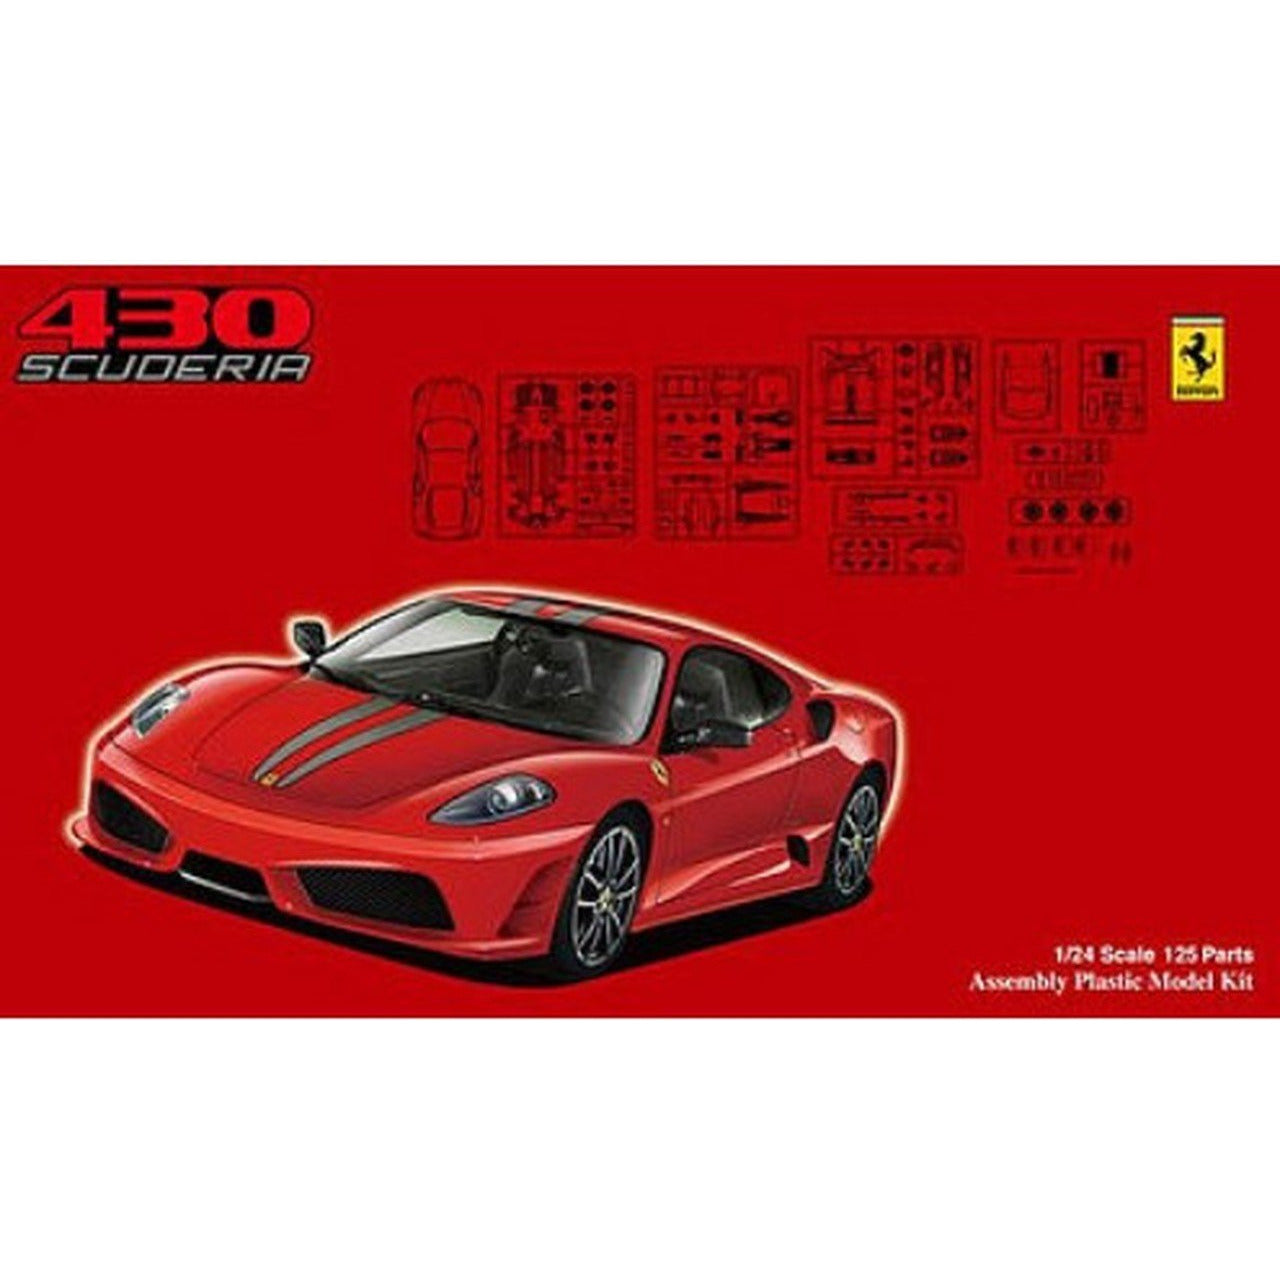 Ferrari F430 Challenge "Sena" 28 1/24 Model Car Kit #FU012361 by Fujimi